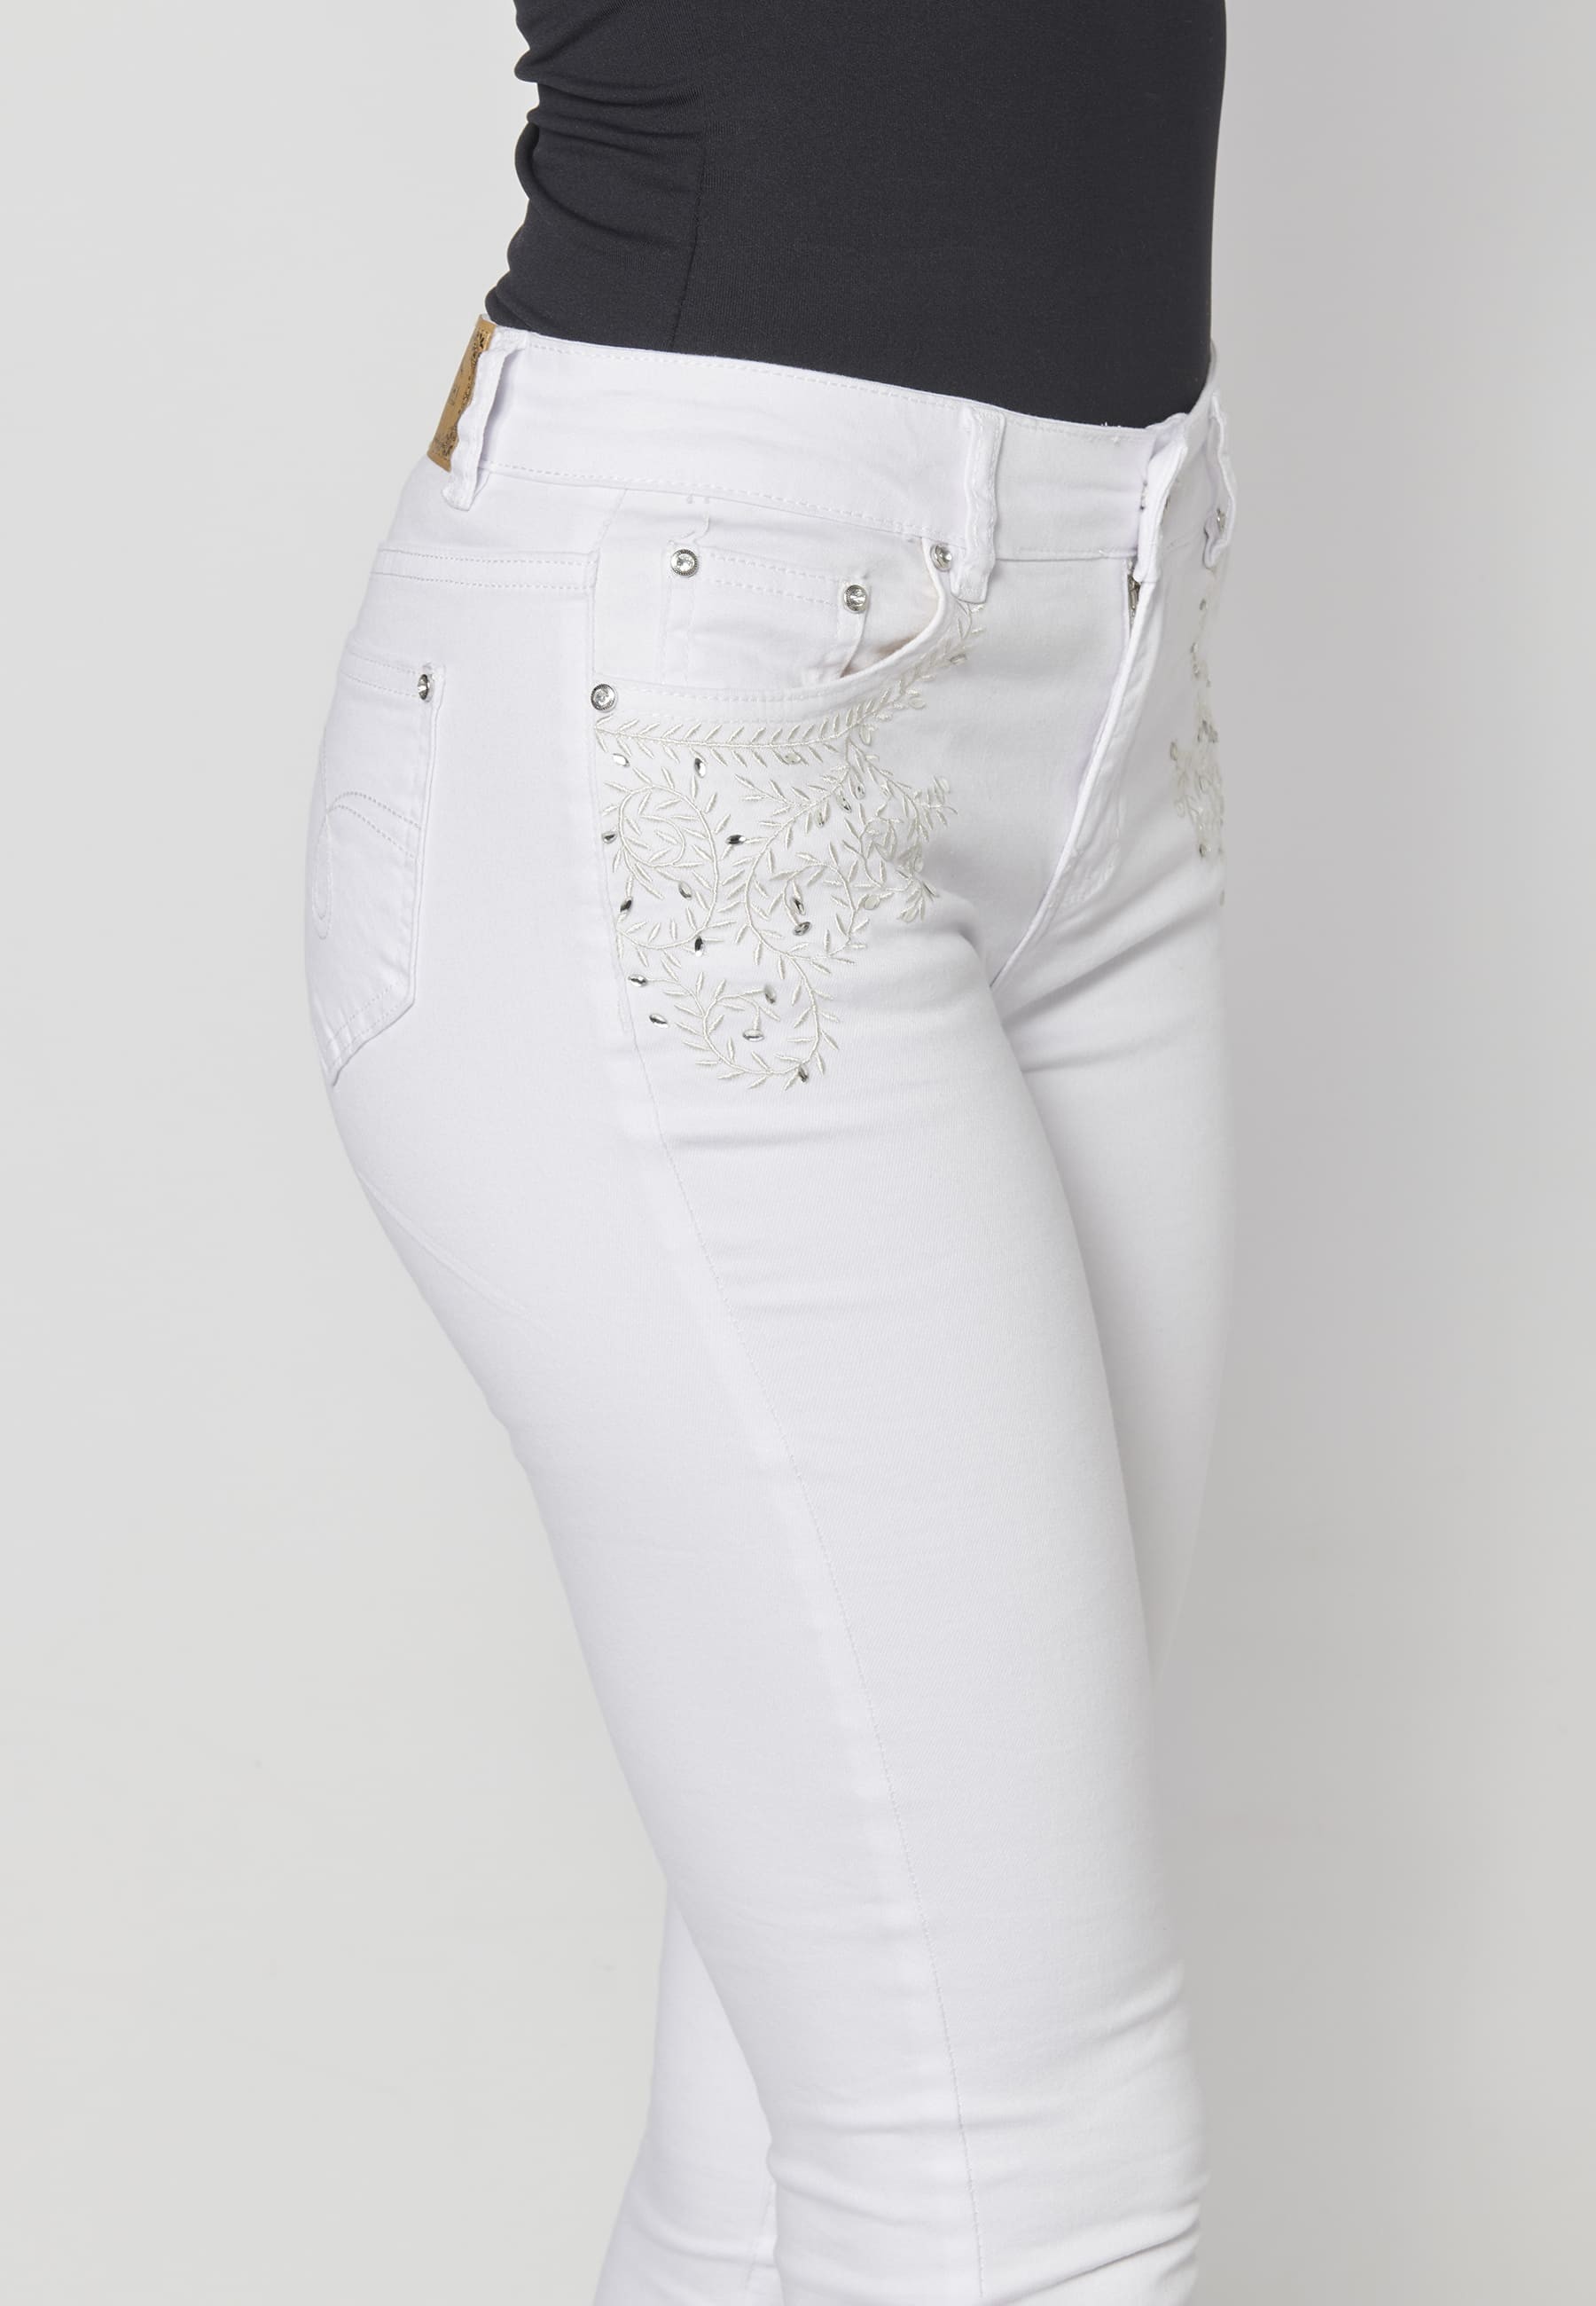 Lange Slim-Fit-Jeans in weißer Farbe für Damen